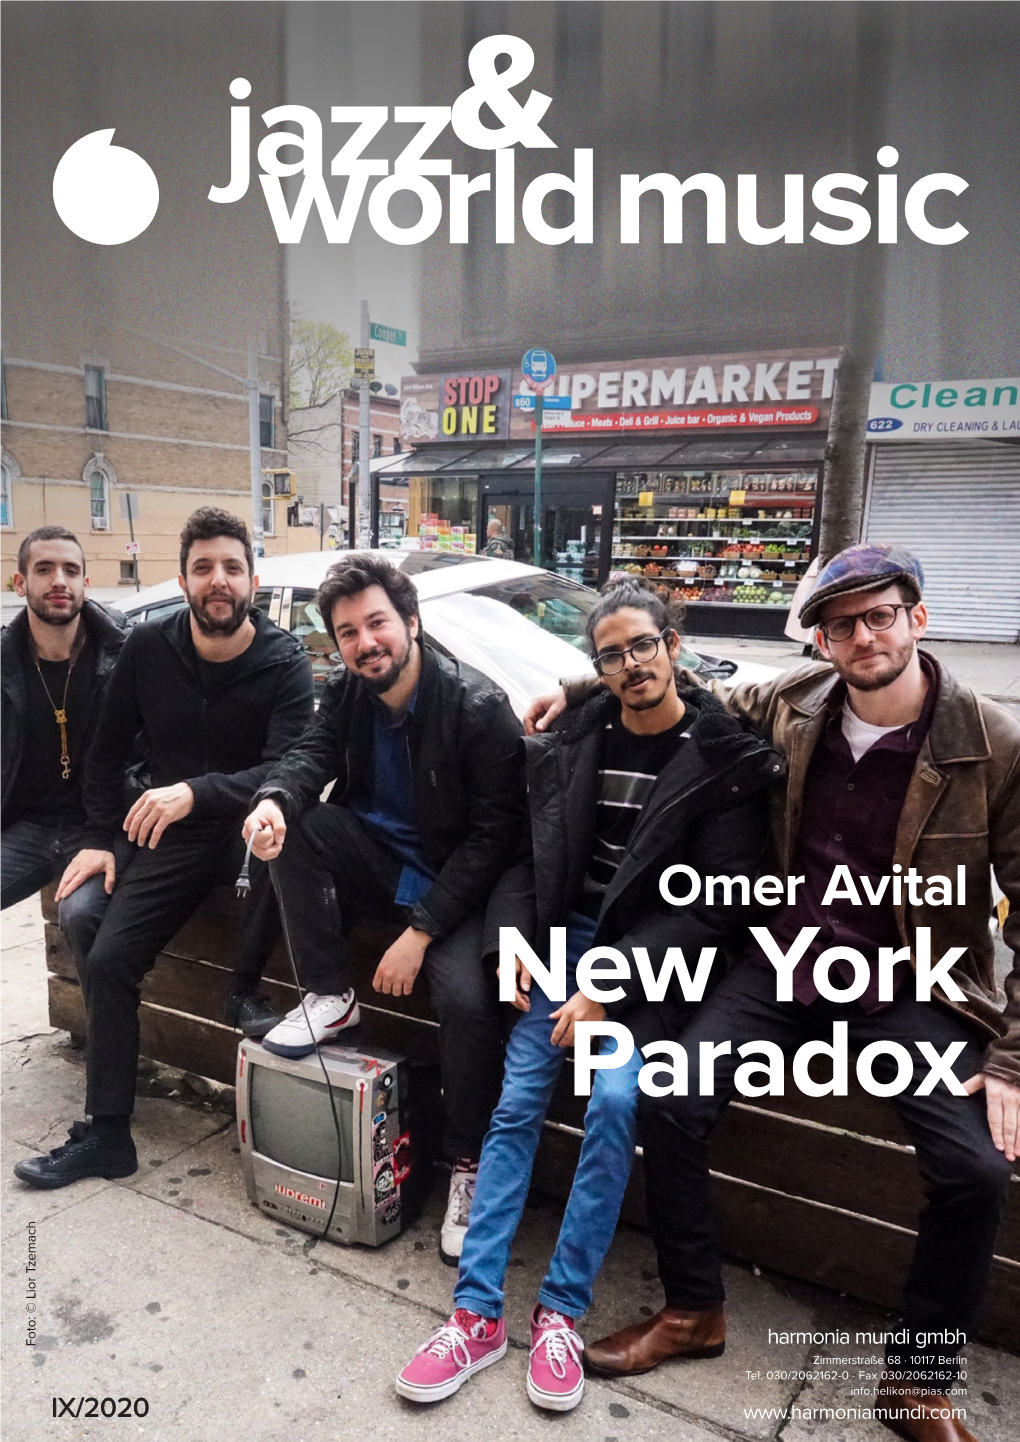 Omer Avital Qantar New York Paradox